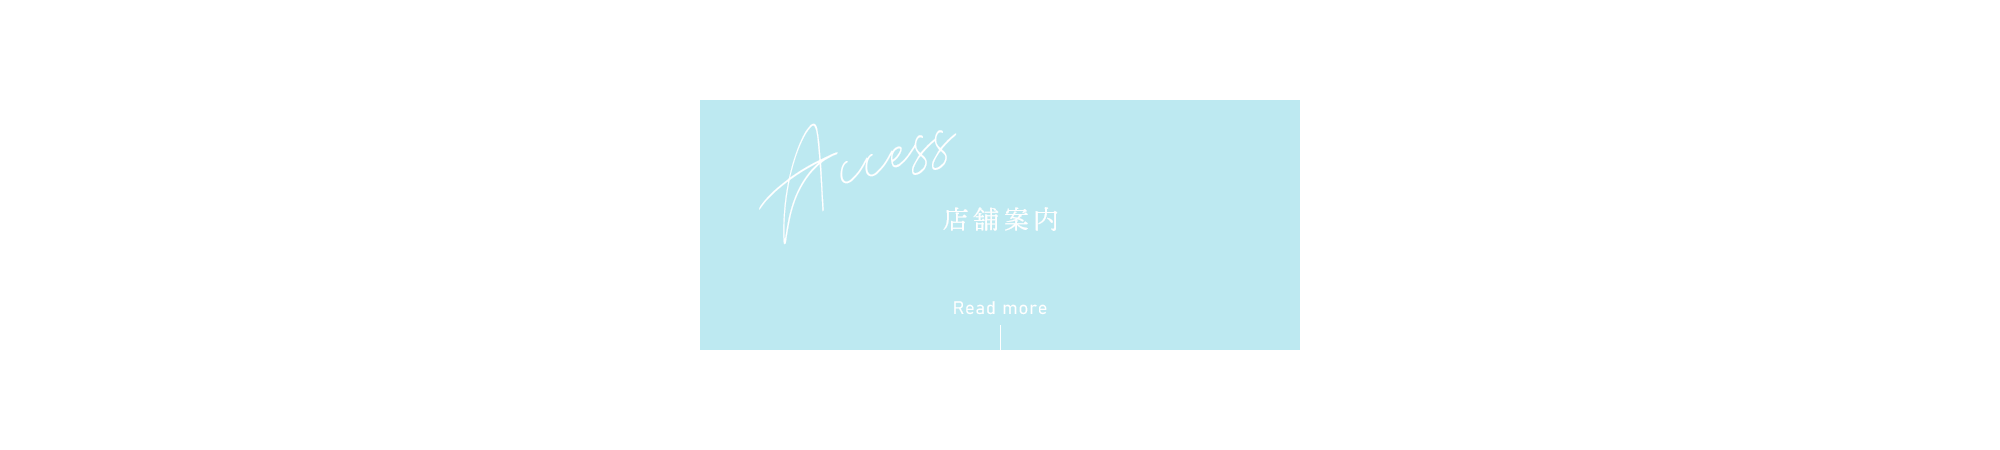 banner_access